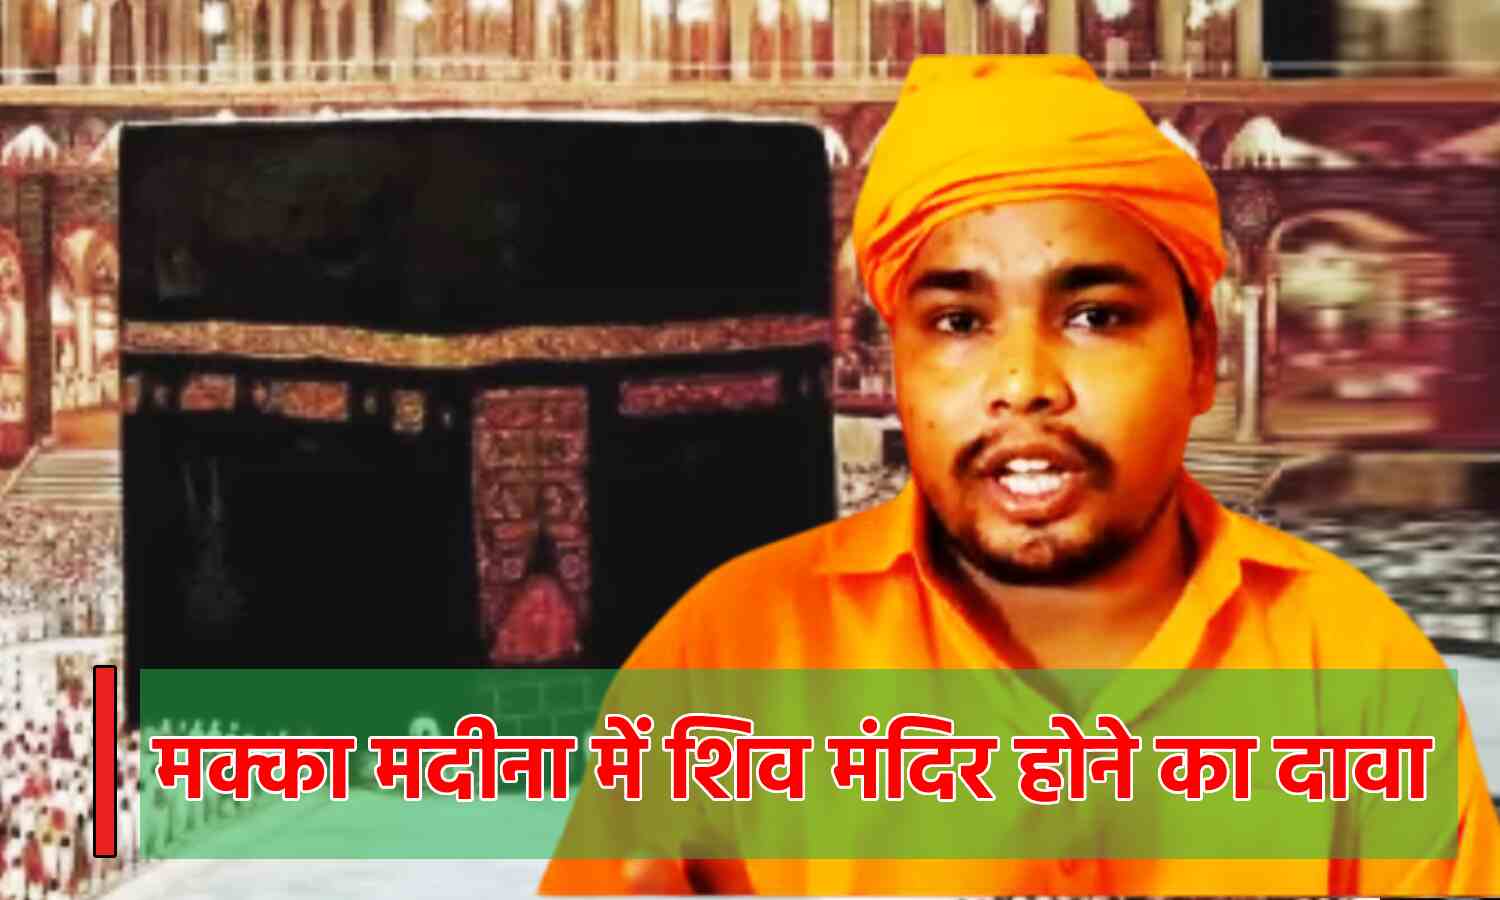 Uttar Pradesh News : मक्का-मदीना की हो जांच, वहां था शिव मंदिर, अंतरराष्ट्रीय अदालत को बजरंग मुनि ने लिखा पत्र